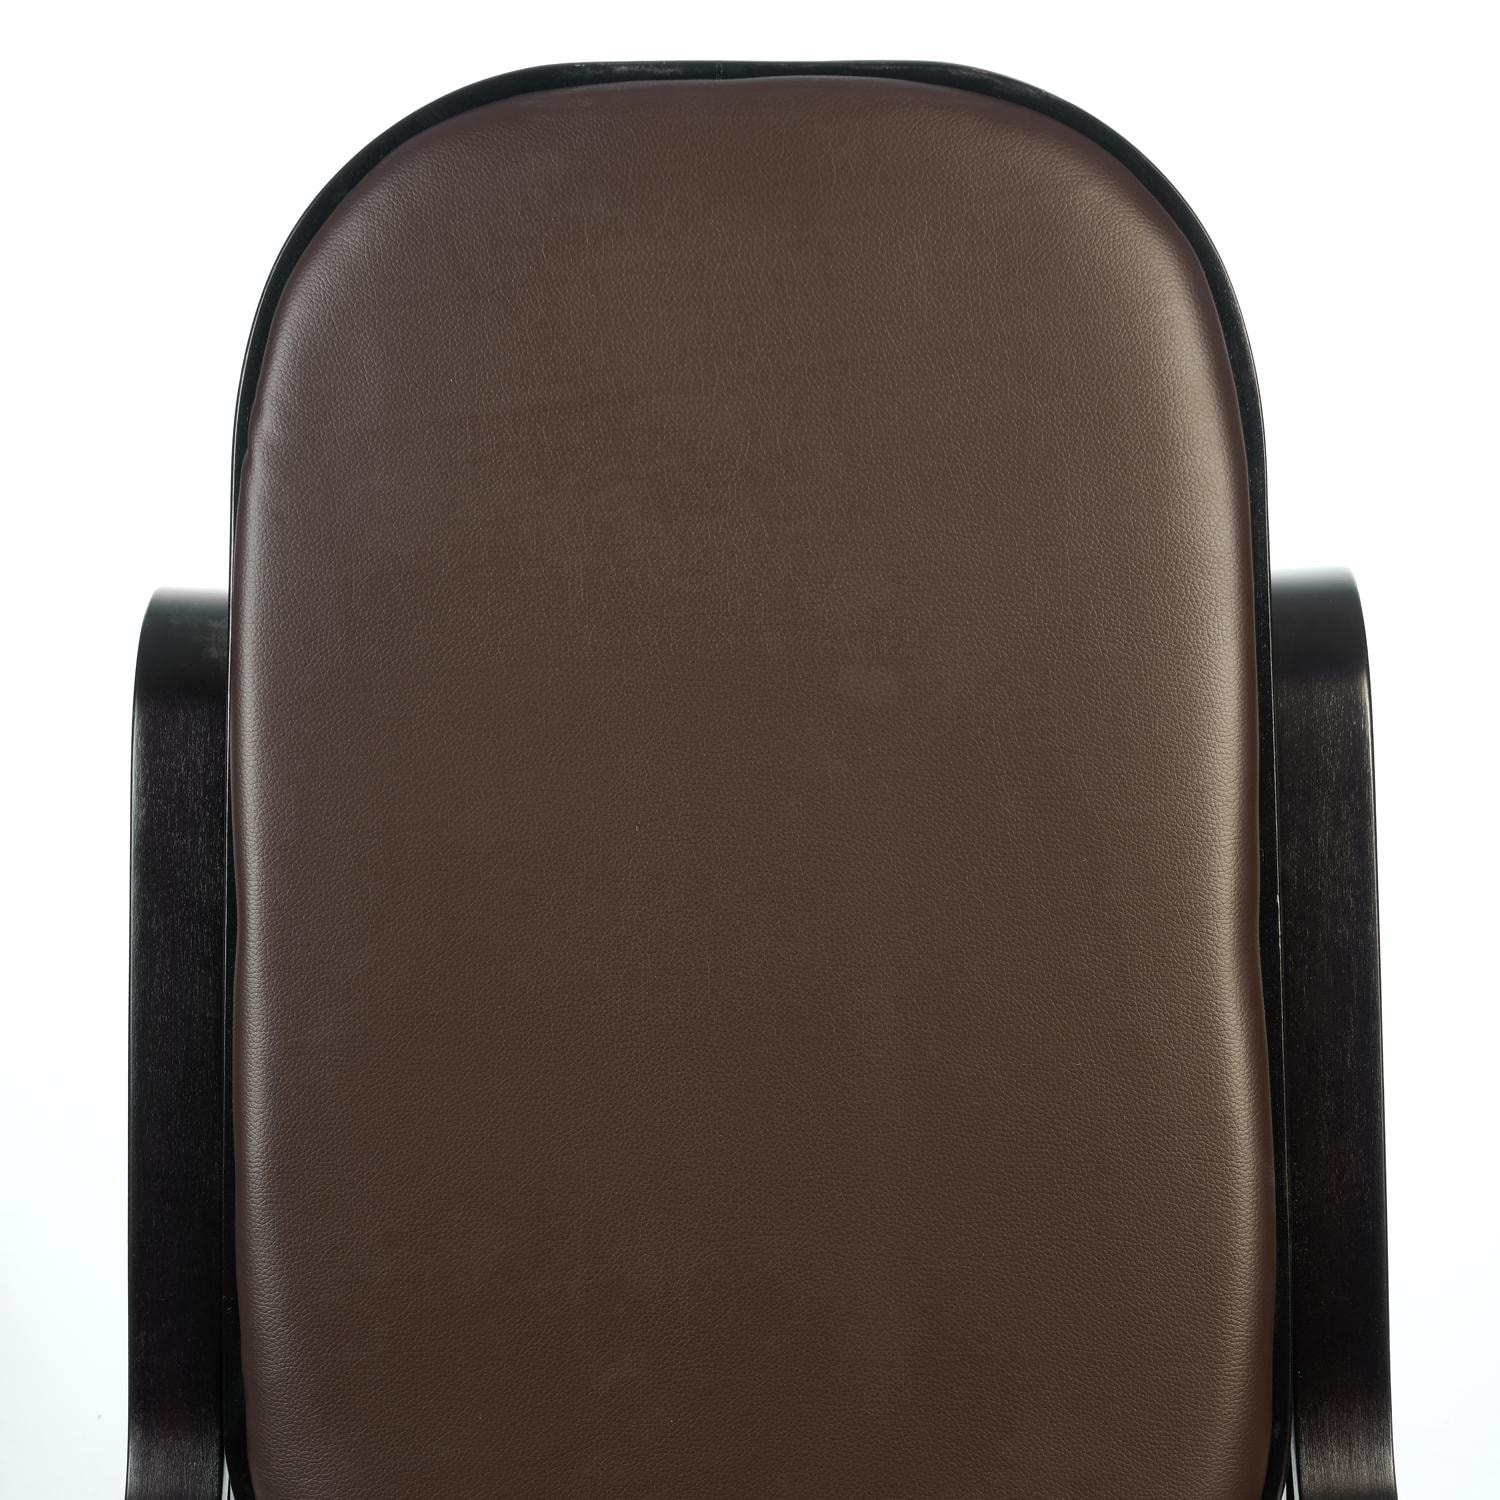 Кресло-качалка ТС 55х98х91 см экокожа венге, цвет тёмно-коричневый - фото 8